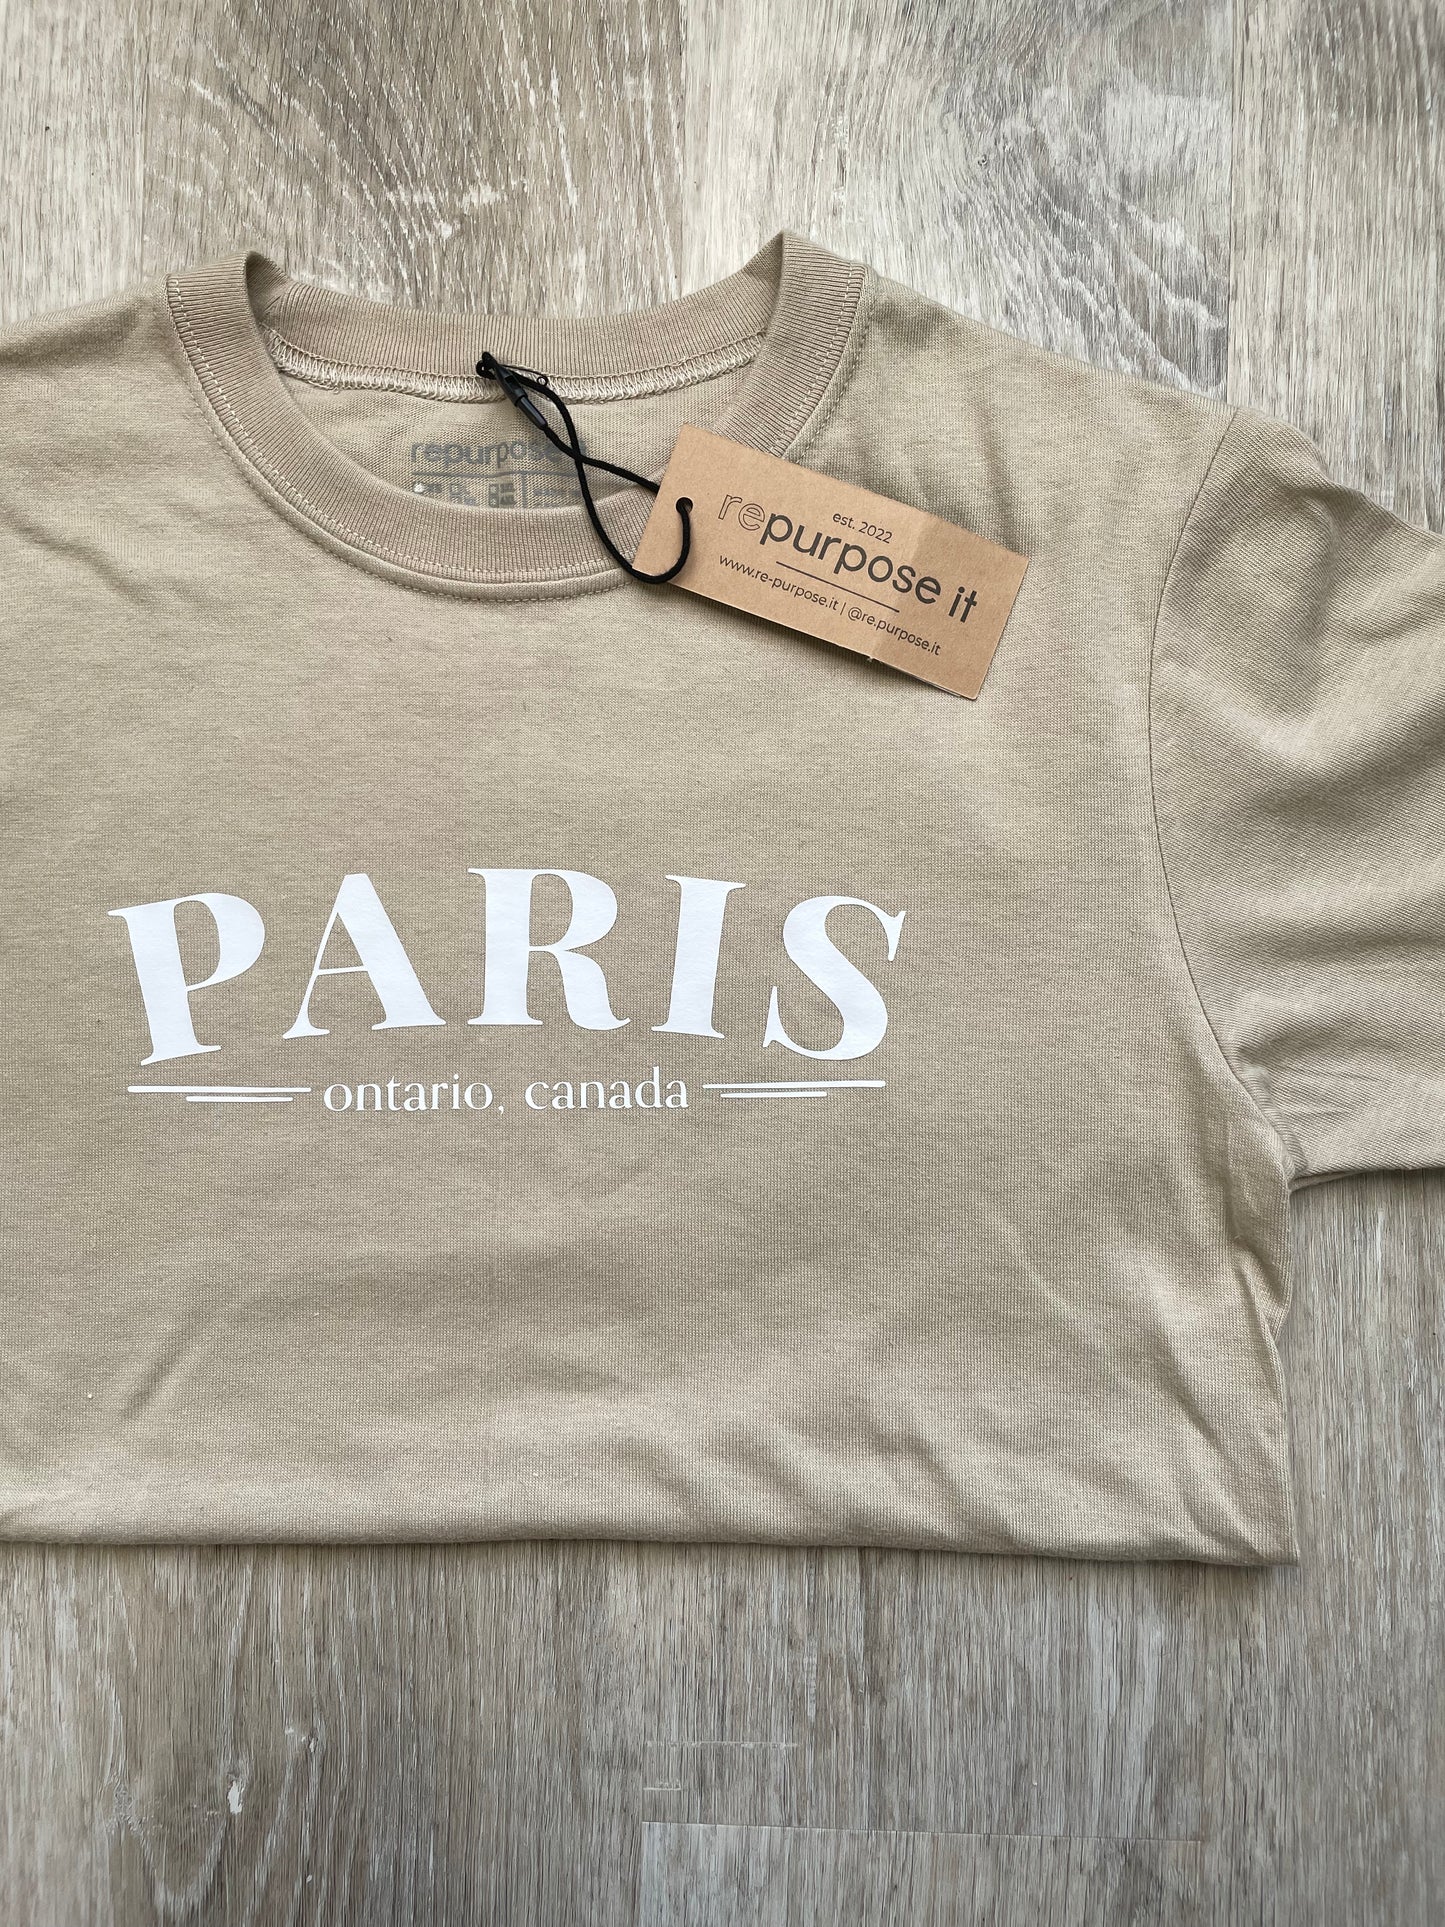 Paris, Ontario Canada T-Shirt